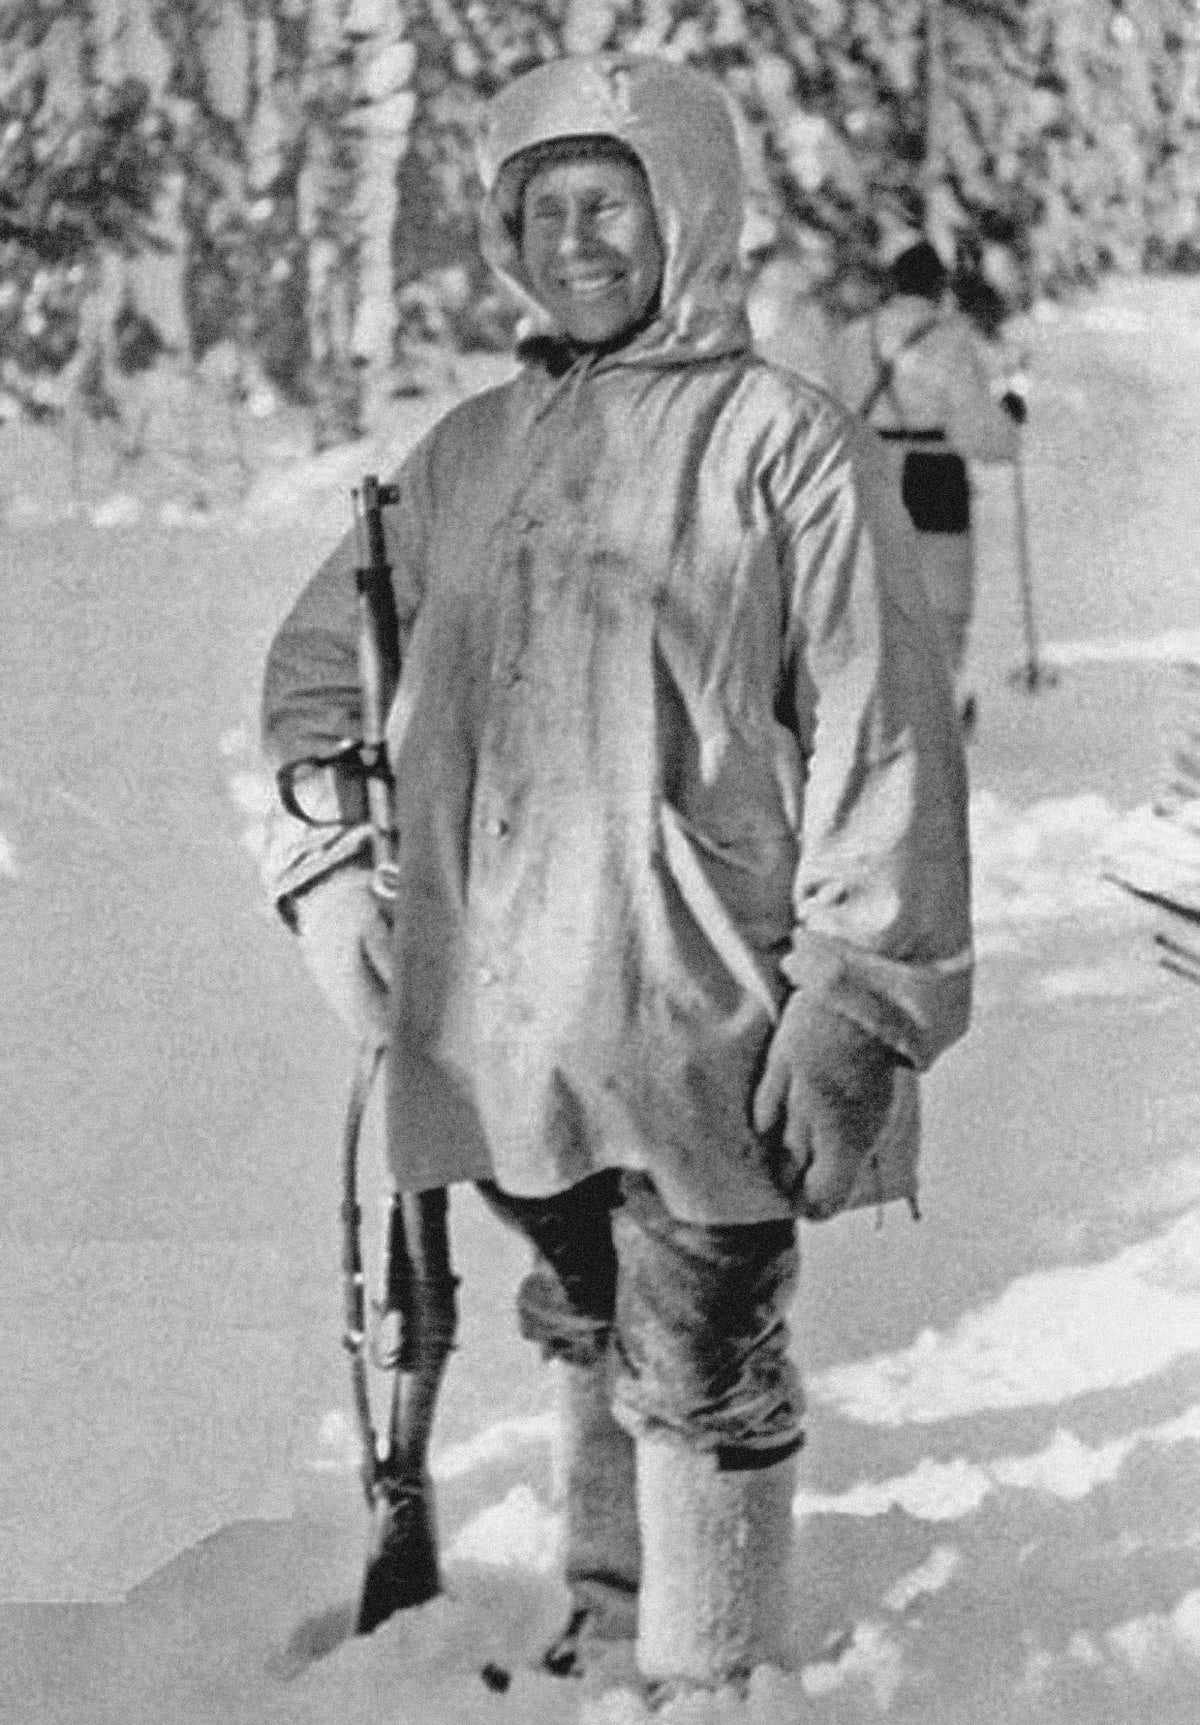 Finský sniper Simo Häyhä, postrach Sovětů v zimní válce.